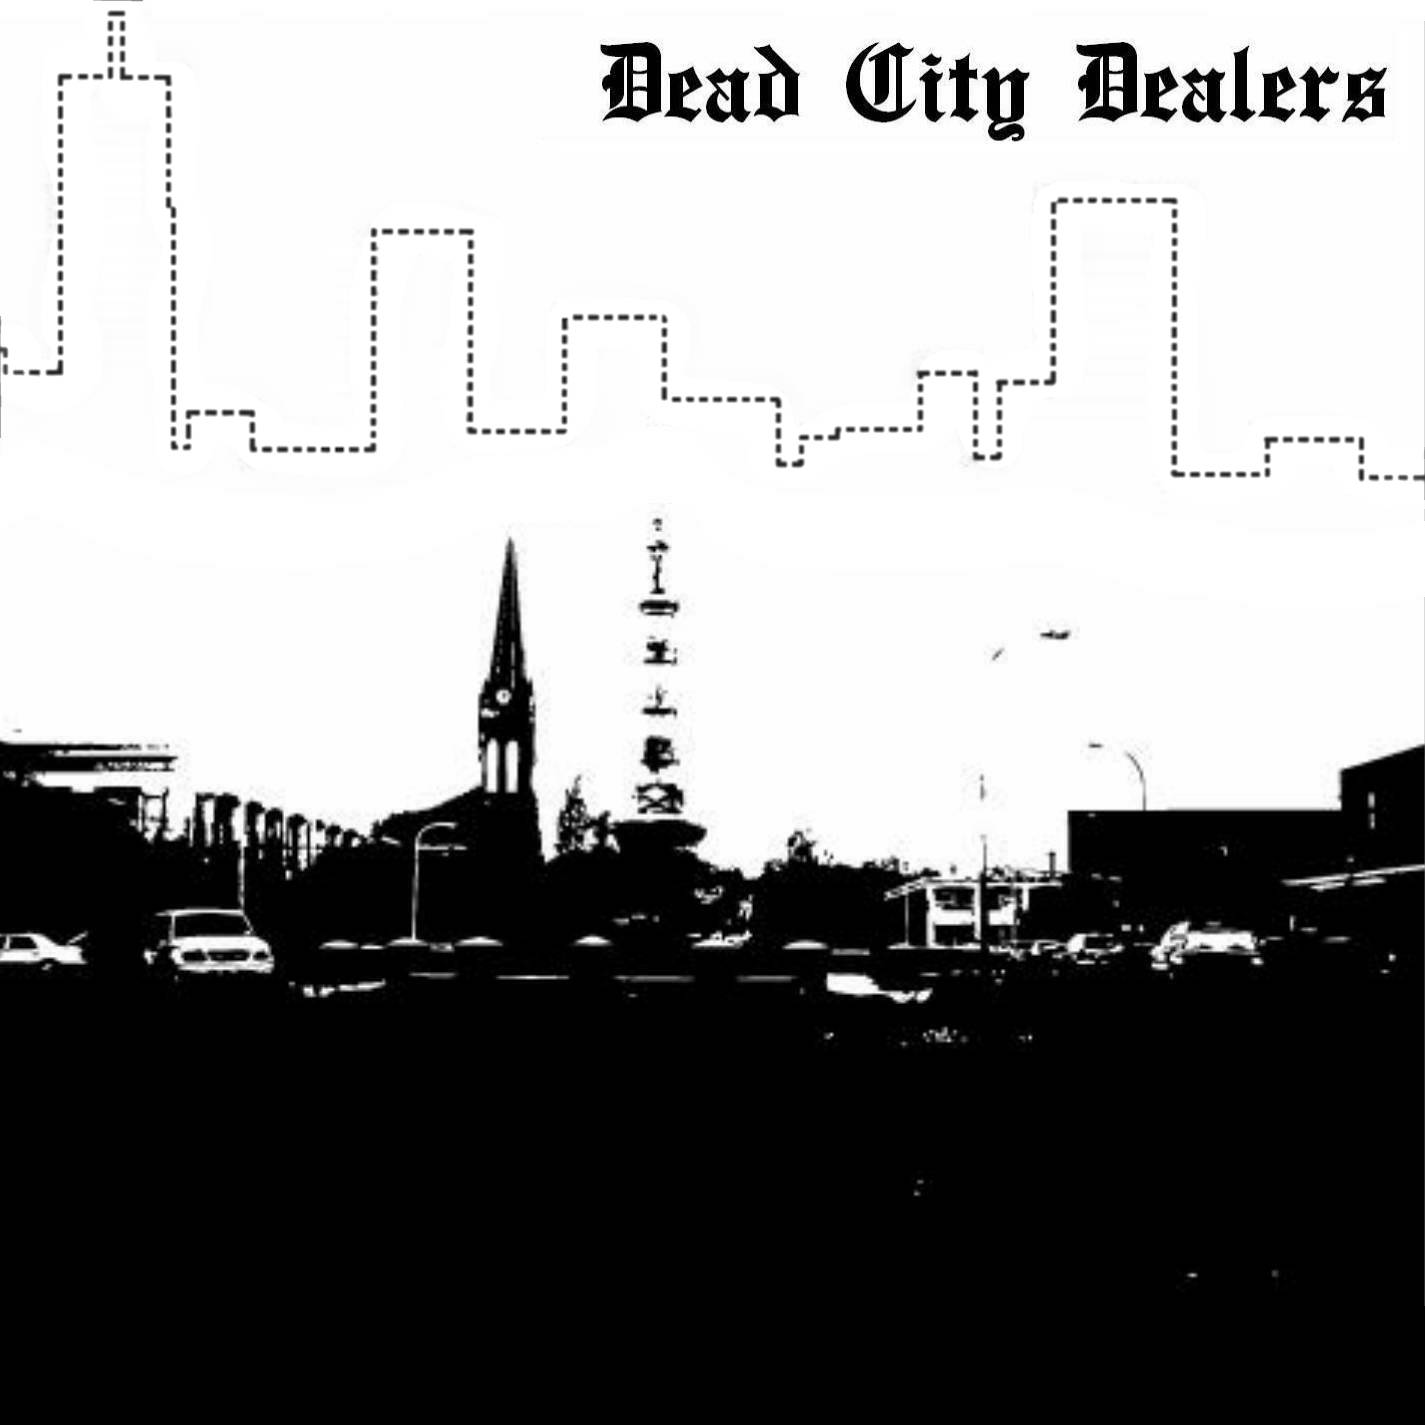 Death City fm. Изображение мертвого города на альбоме 80 х. City deal